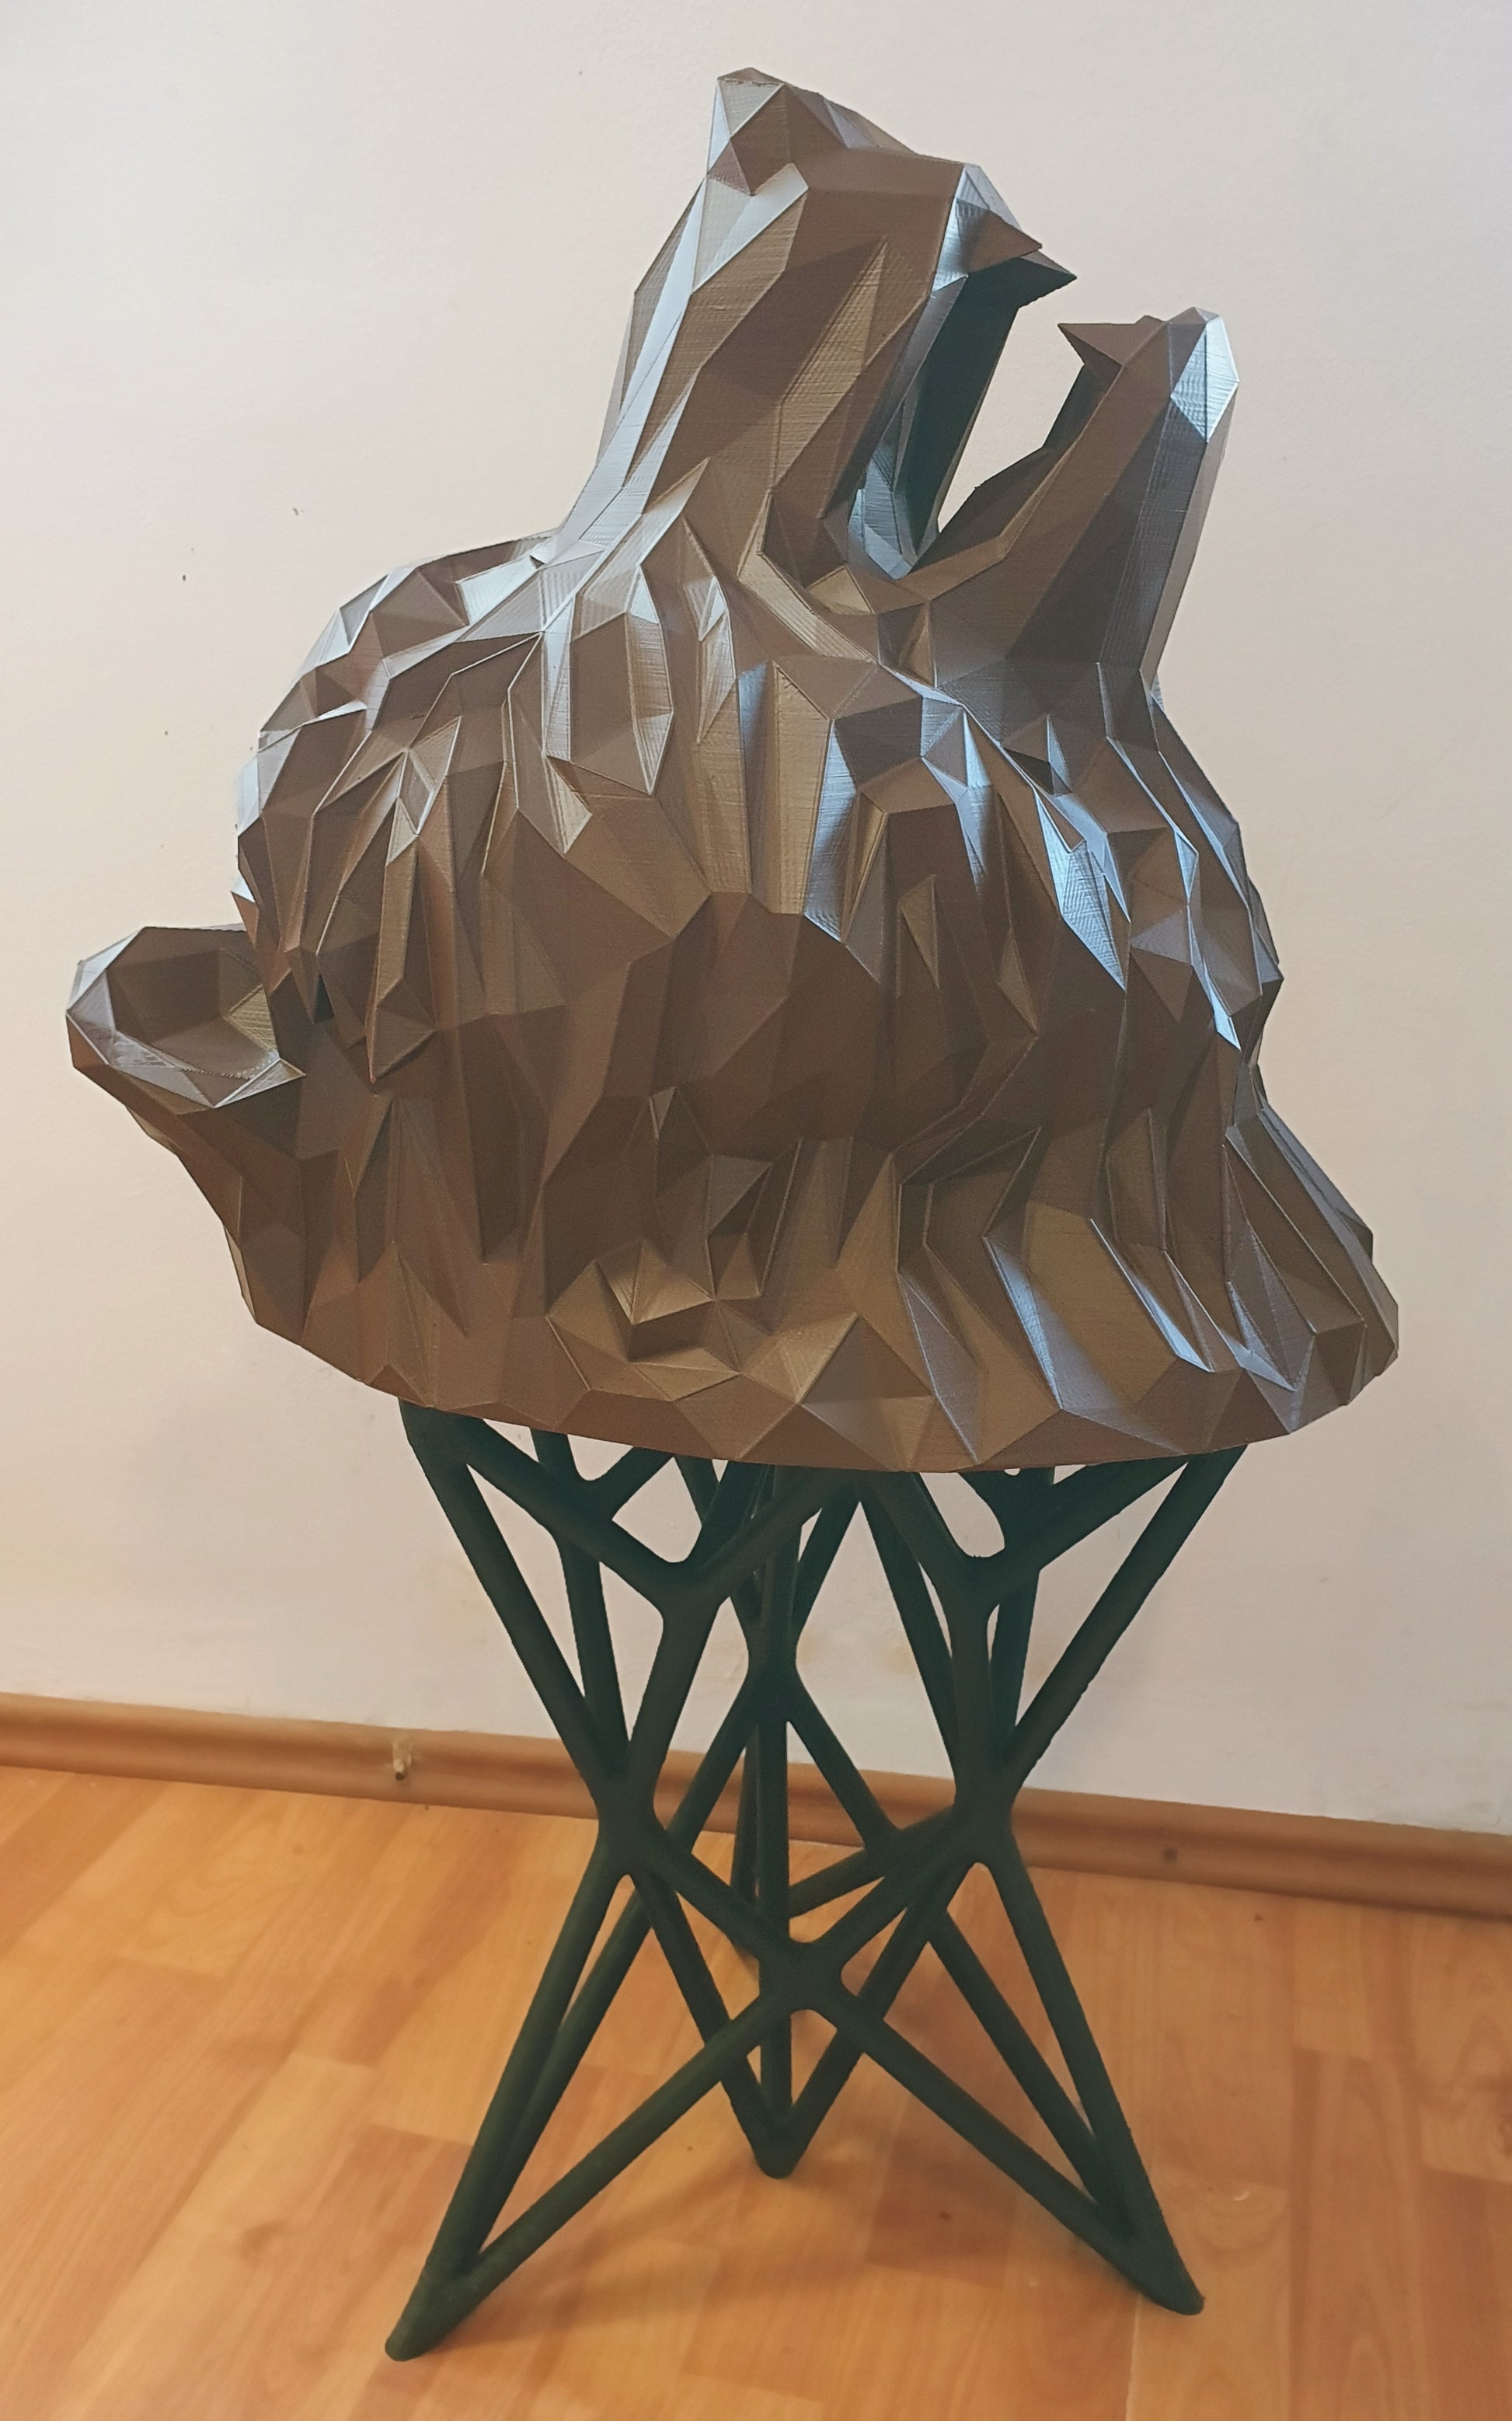 Cap de urs printat 3D